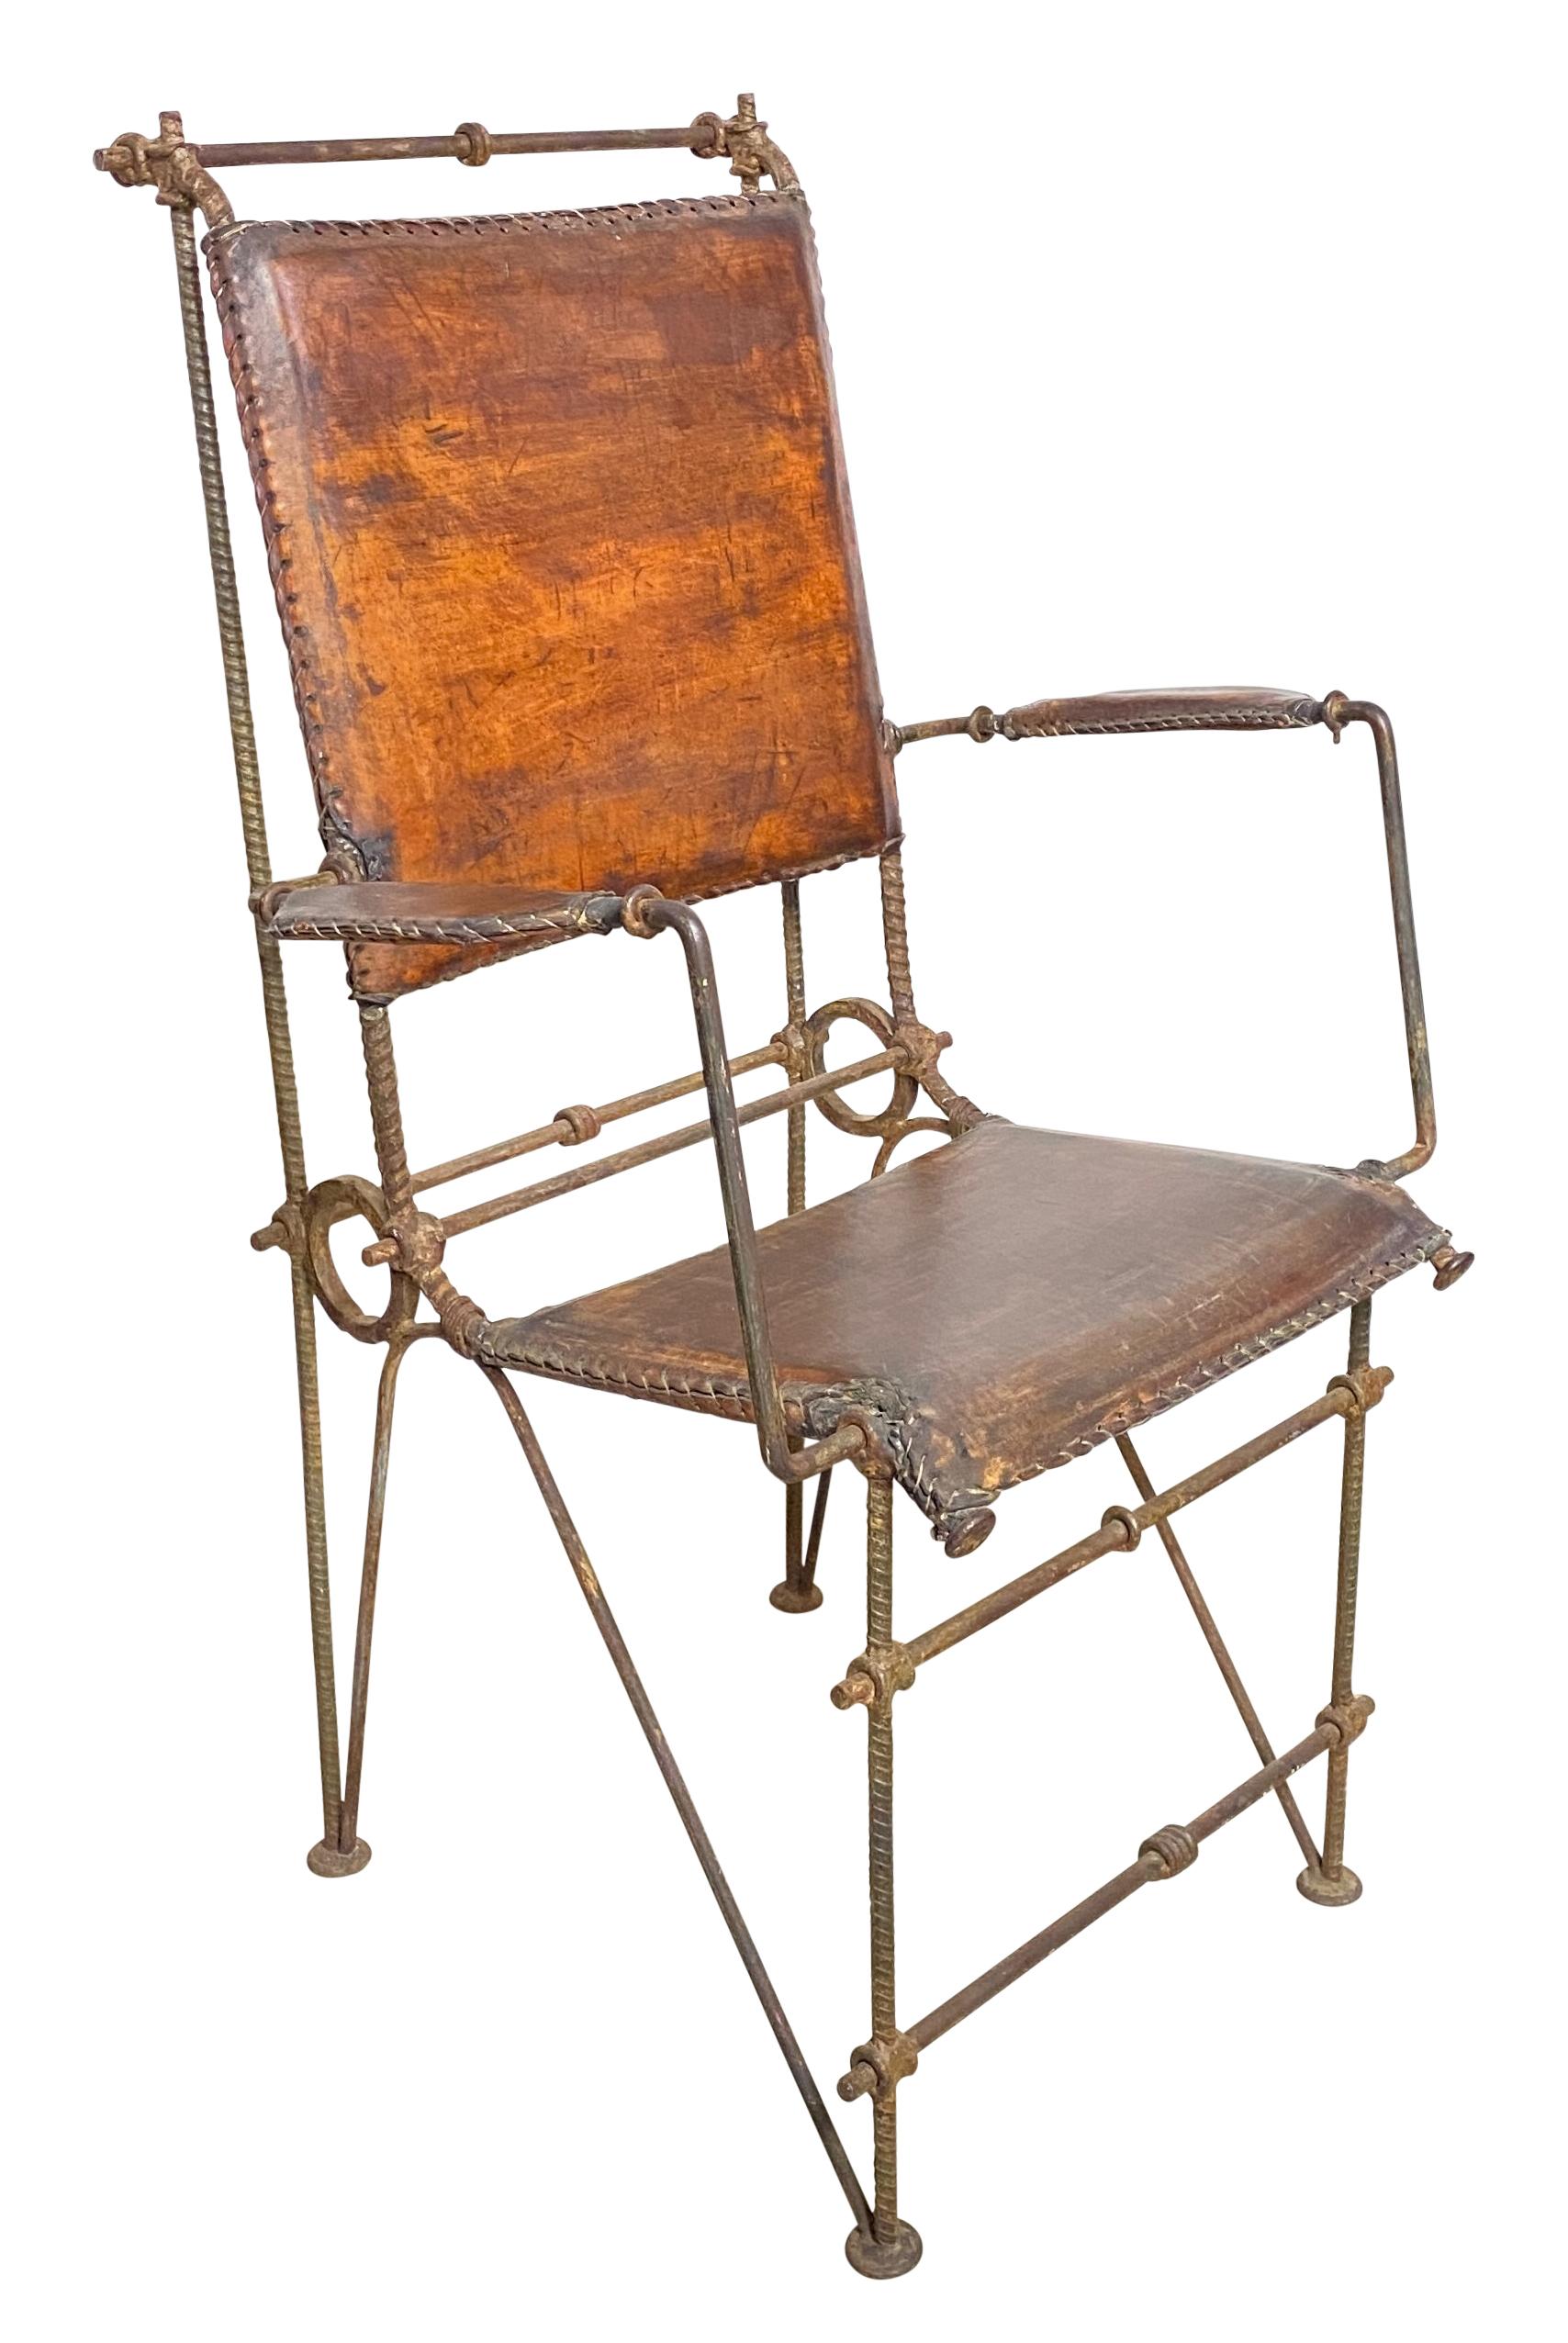 Merveilleux fauteuil en fer et en cuir de la talentueuse designer israélienne Ilana Goor. Cette chaise est composée de cuir vieilli et d'une structure en fer forgé. 
En très bon état d'origine.

Ilana Goor est née en Israël en 1936. Elle a fréquenté